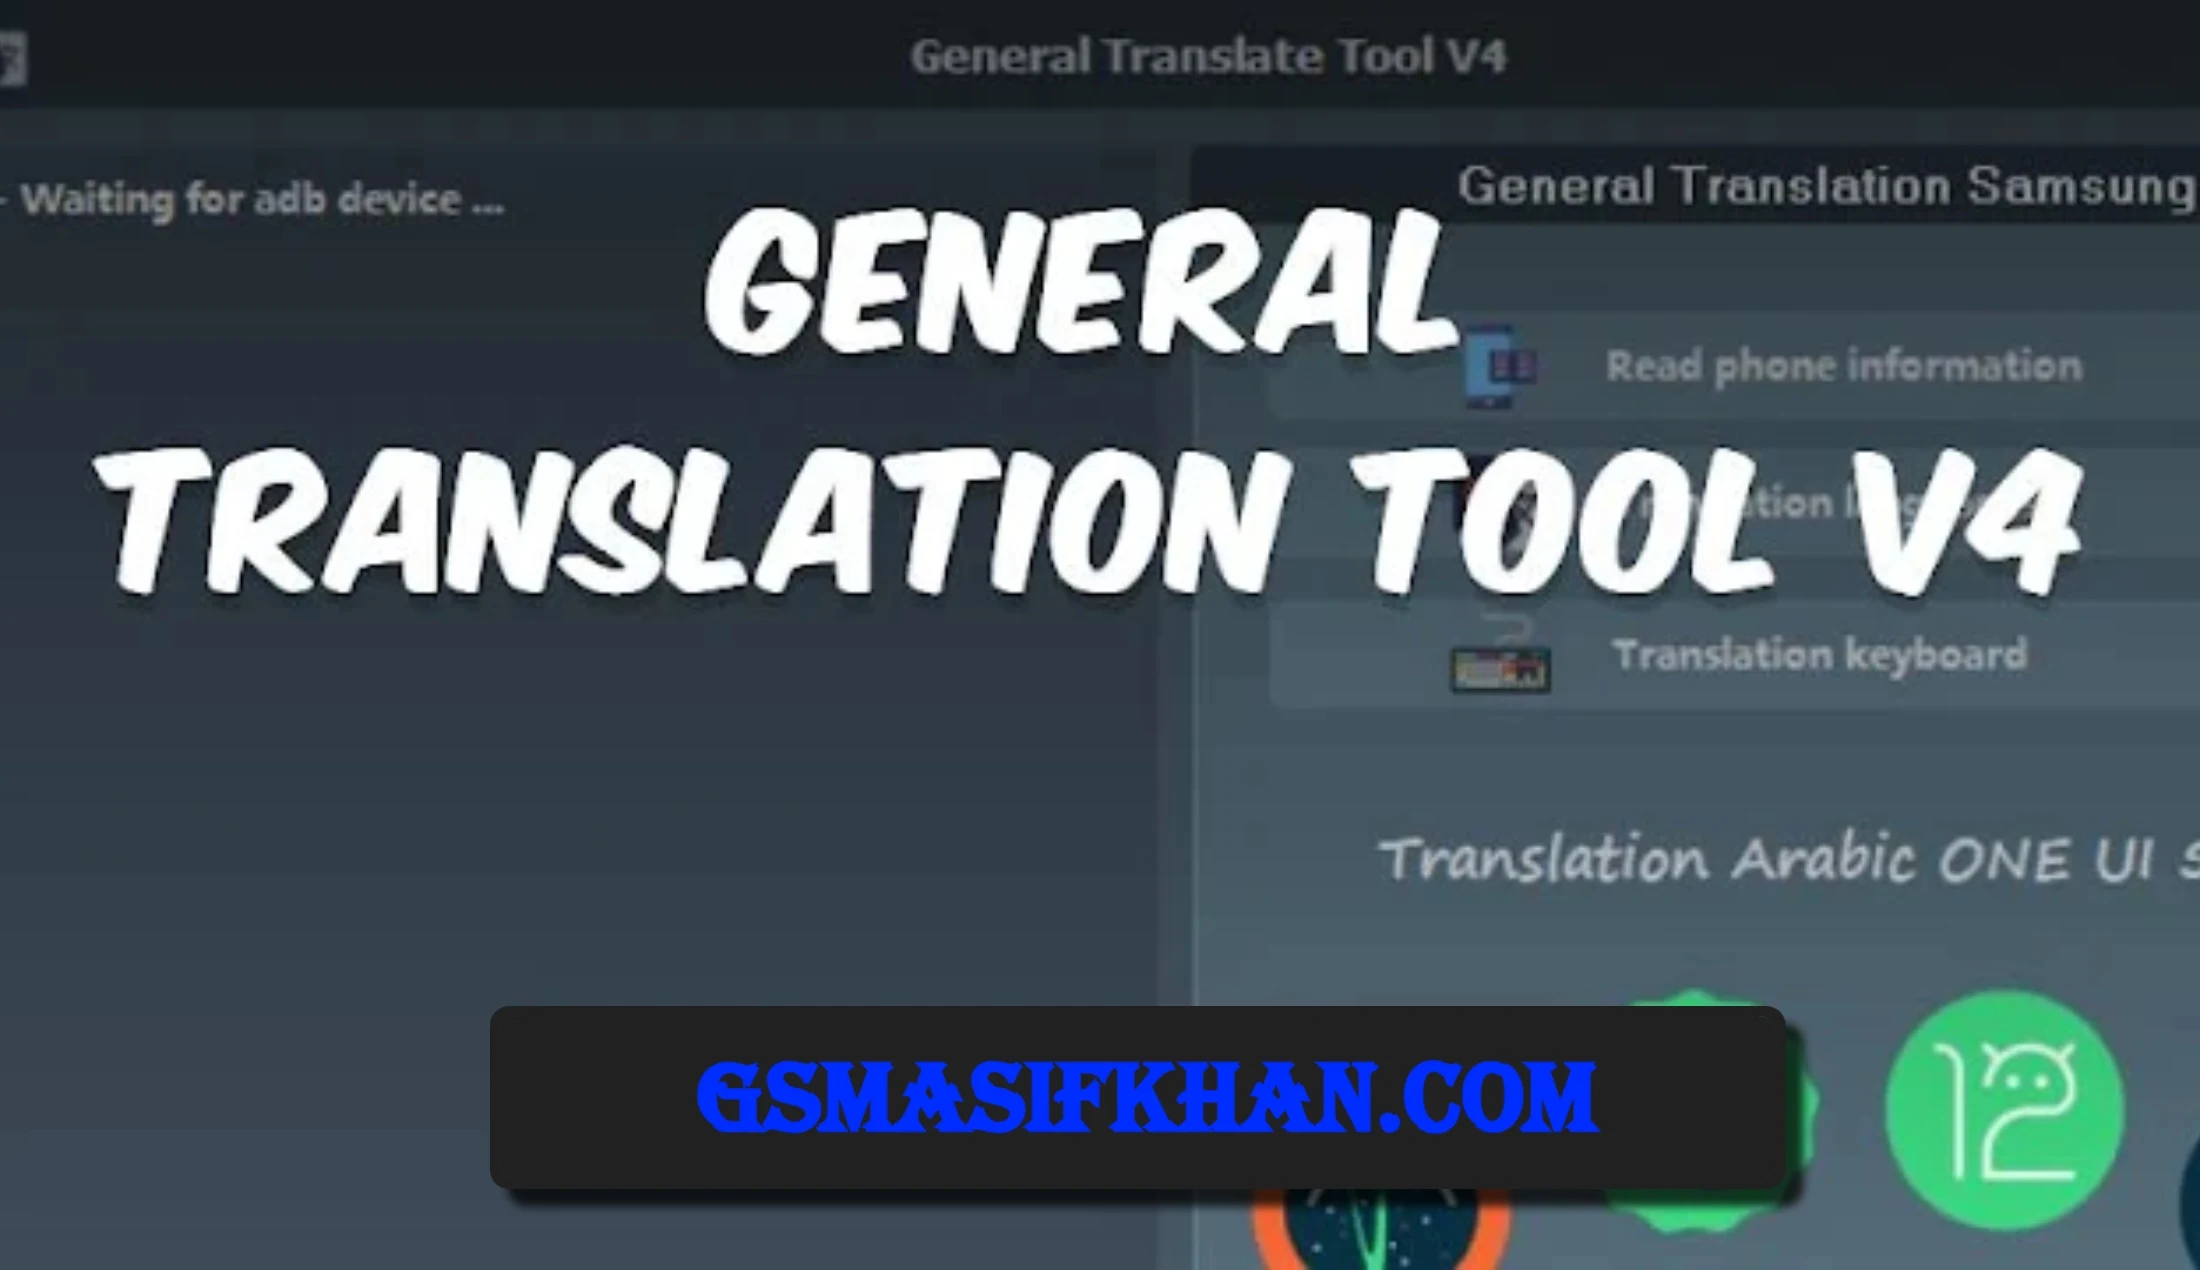 General Translation Tool V4